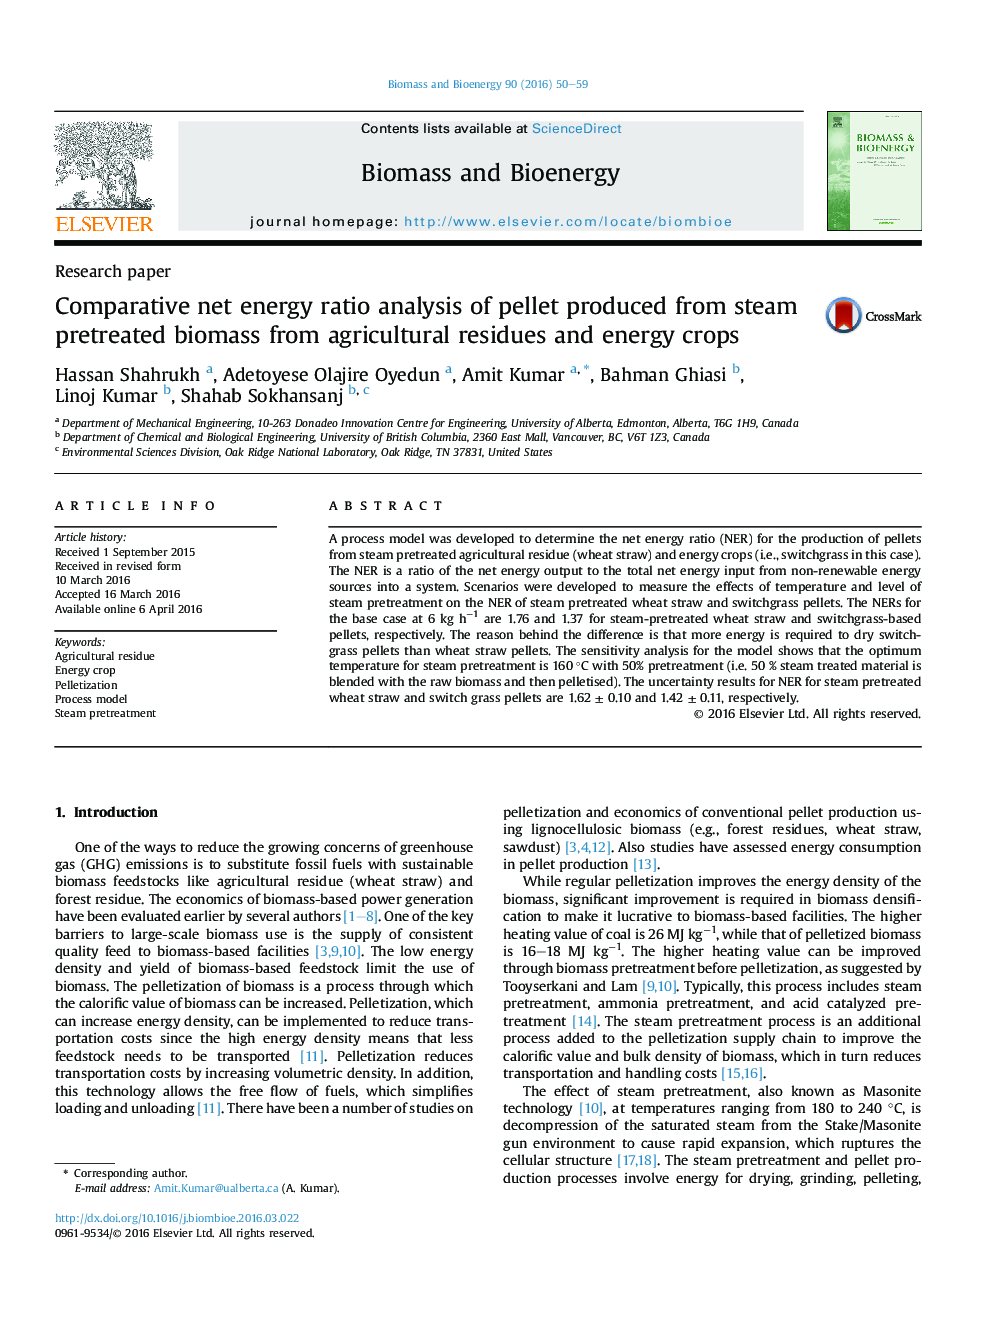 تجزیه و تحلیل نسبت انرژی خالص پلت تولید شده از سوخت زیستی قبل از بازیافت از مخازن کشاورزی و محصولات انرژی 